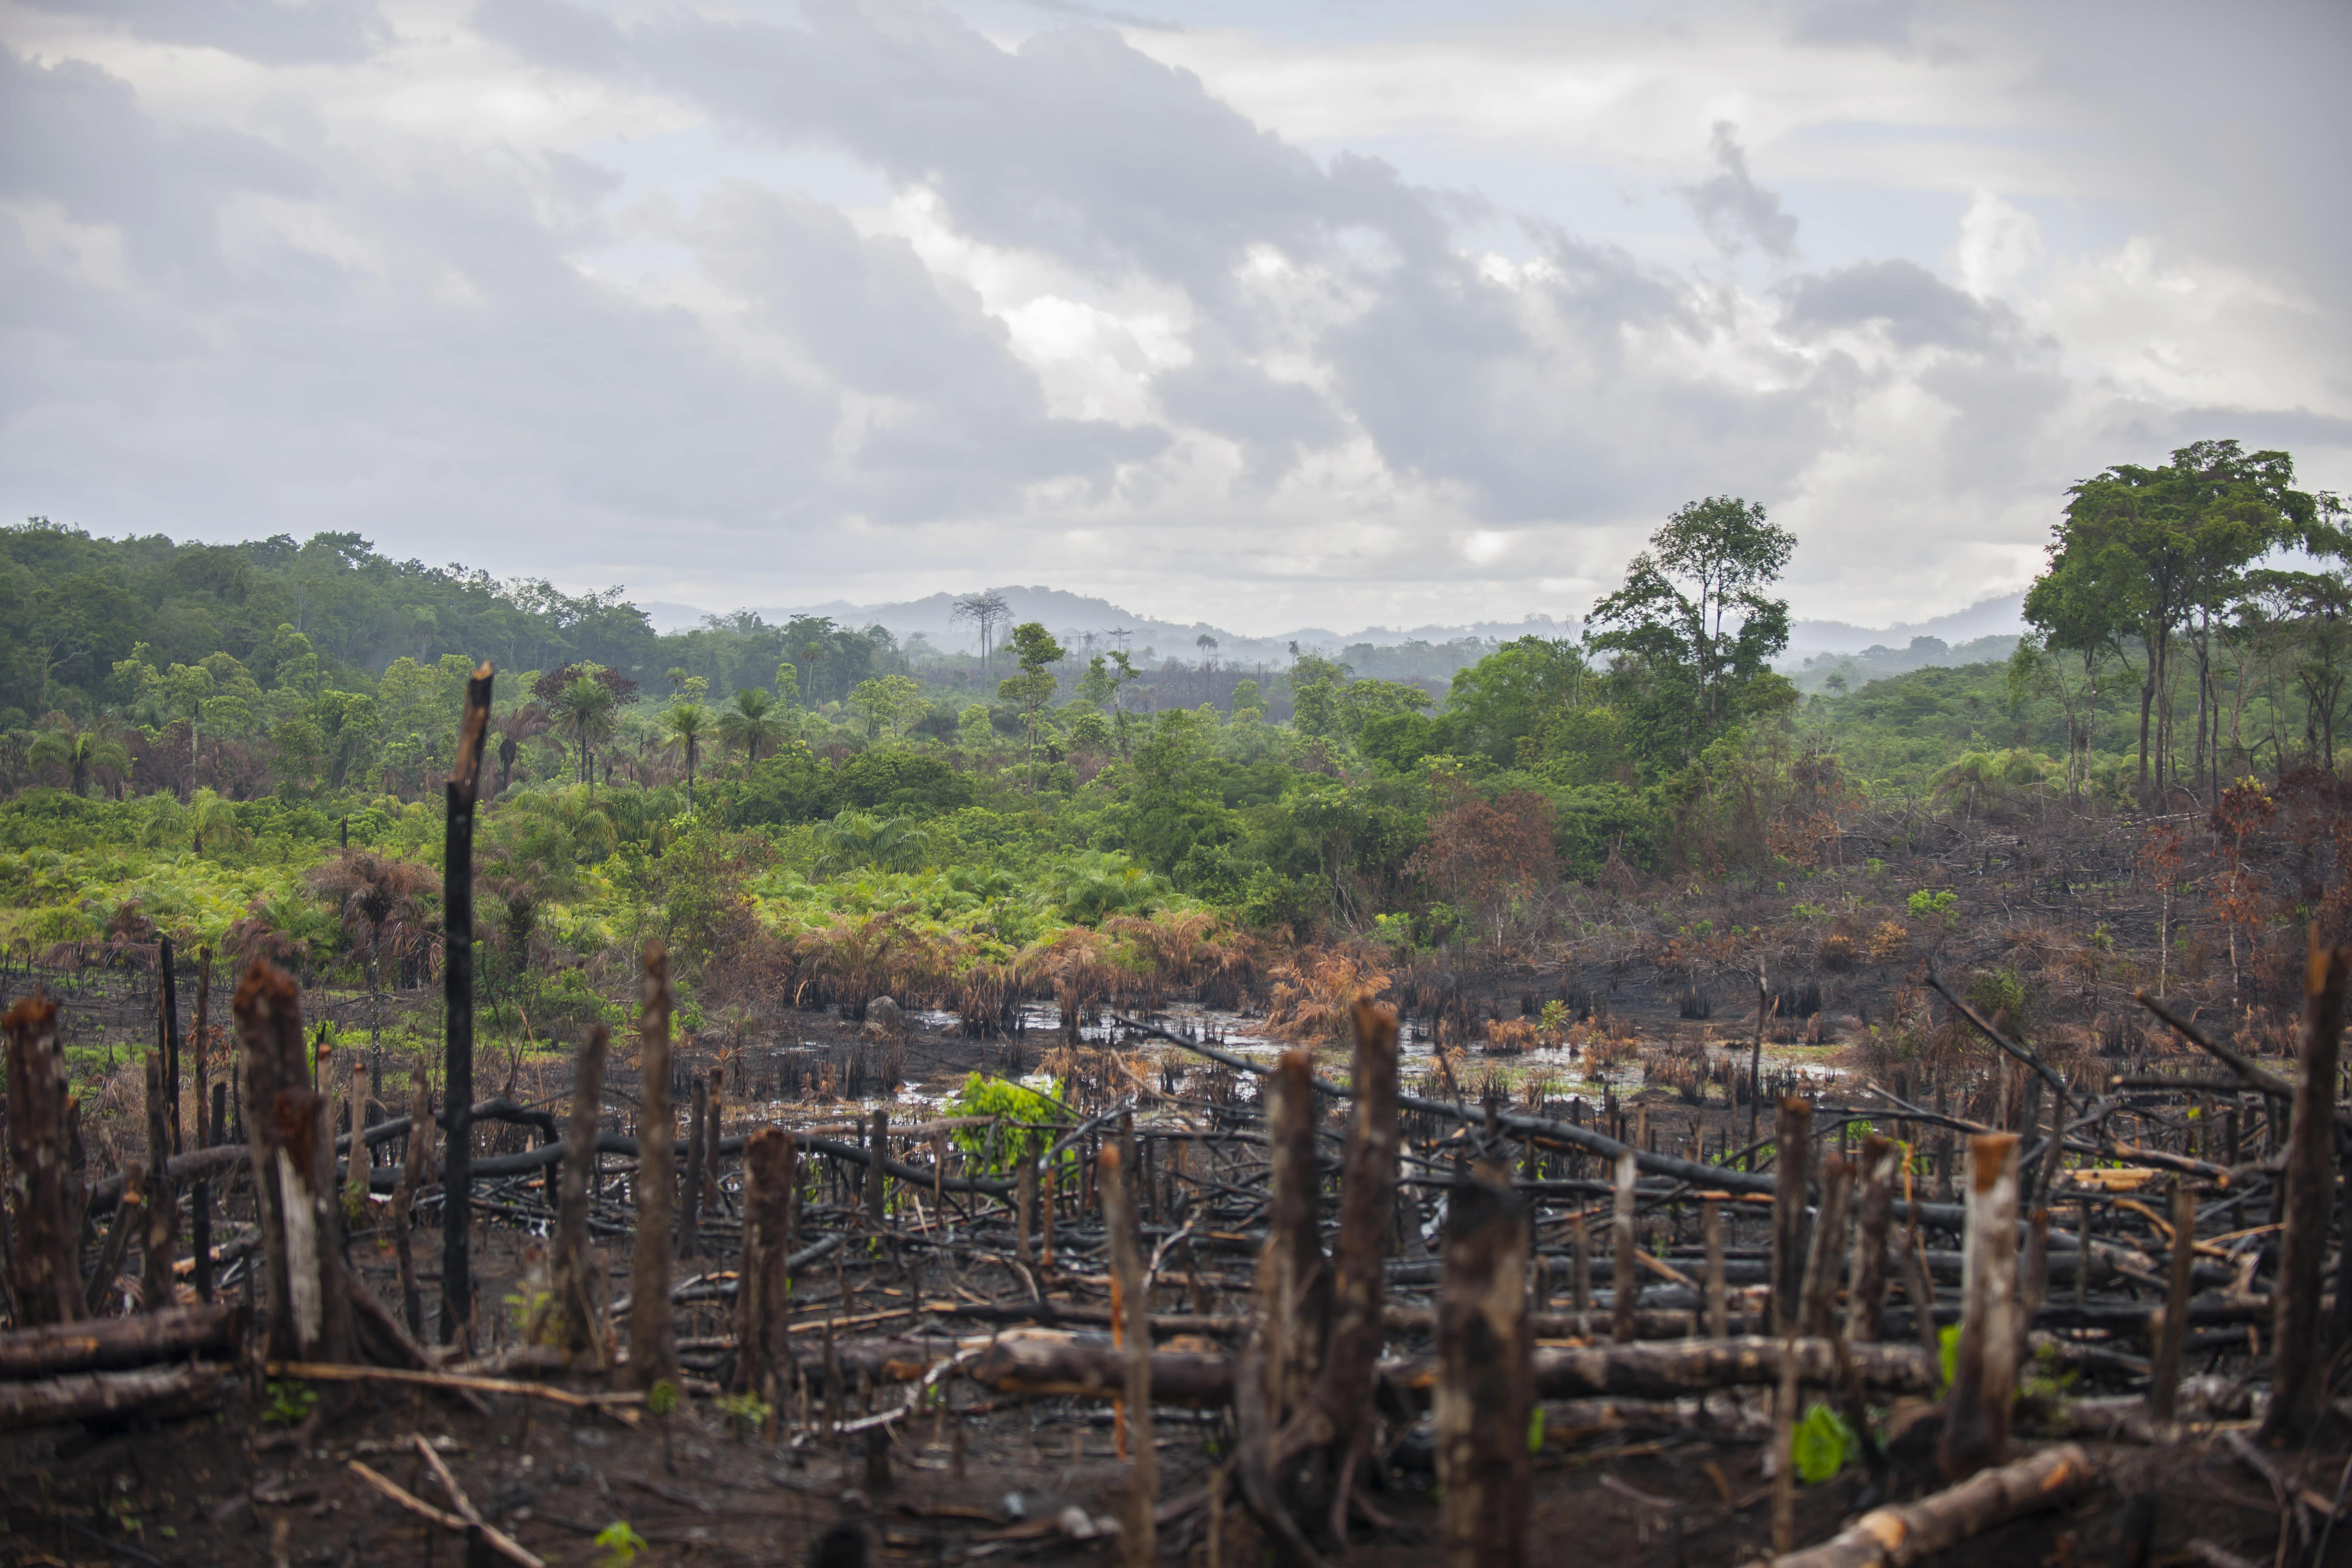 Die Weltgemeinschaft einigte sich auf ein Ende der Rodung von Wäldern bis 2030.